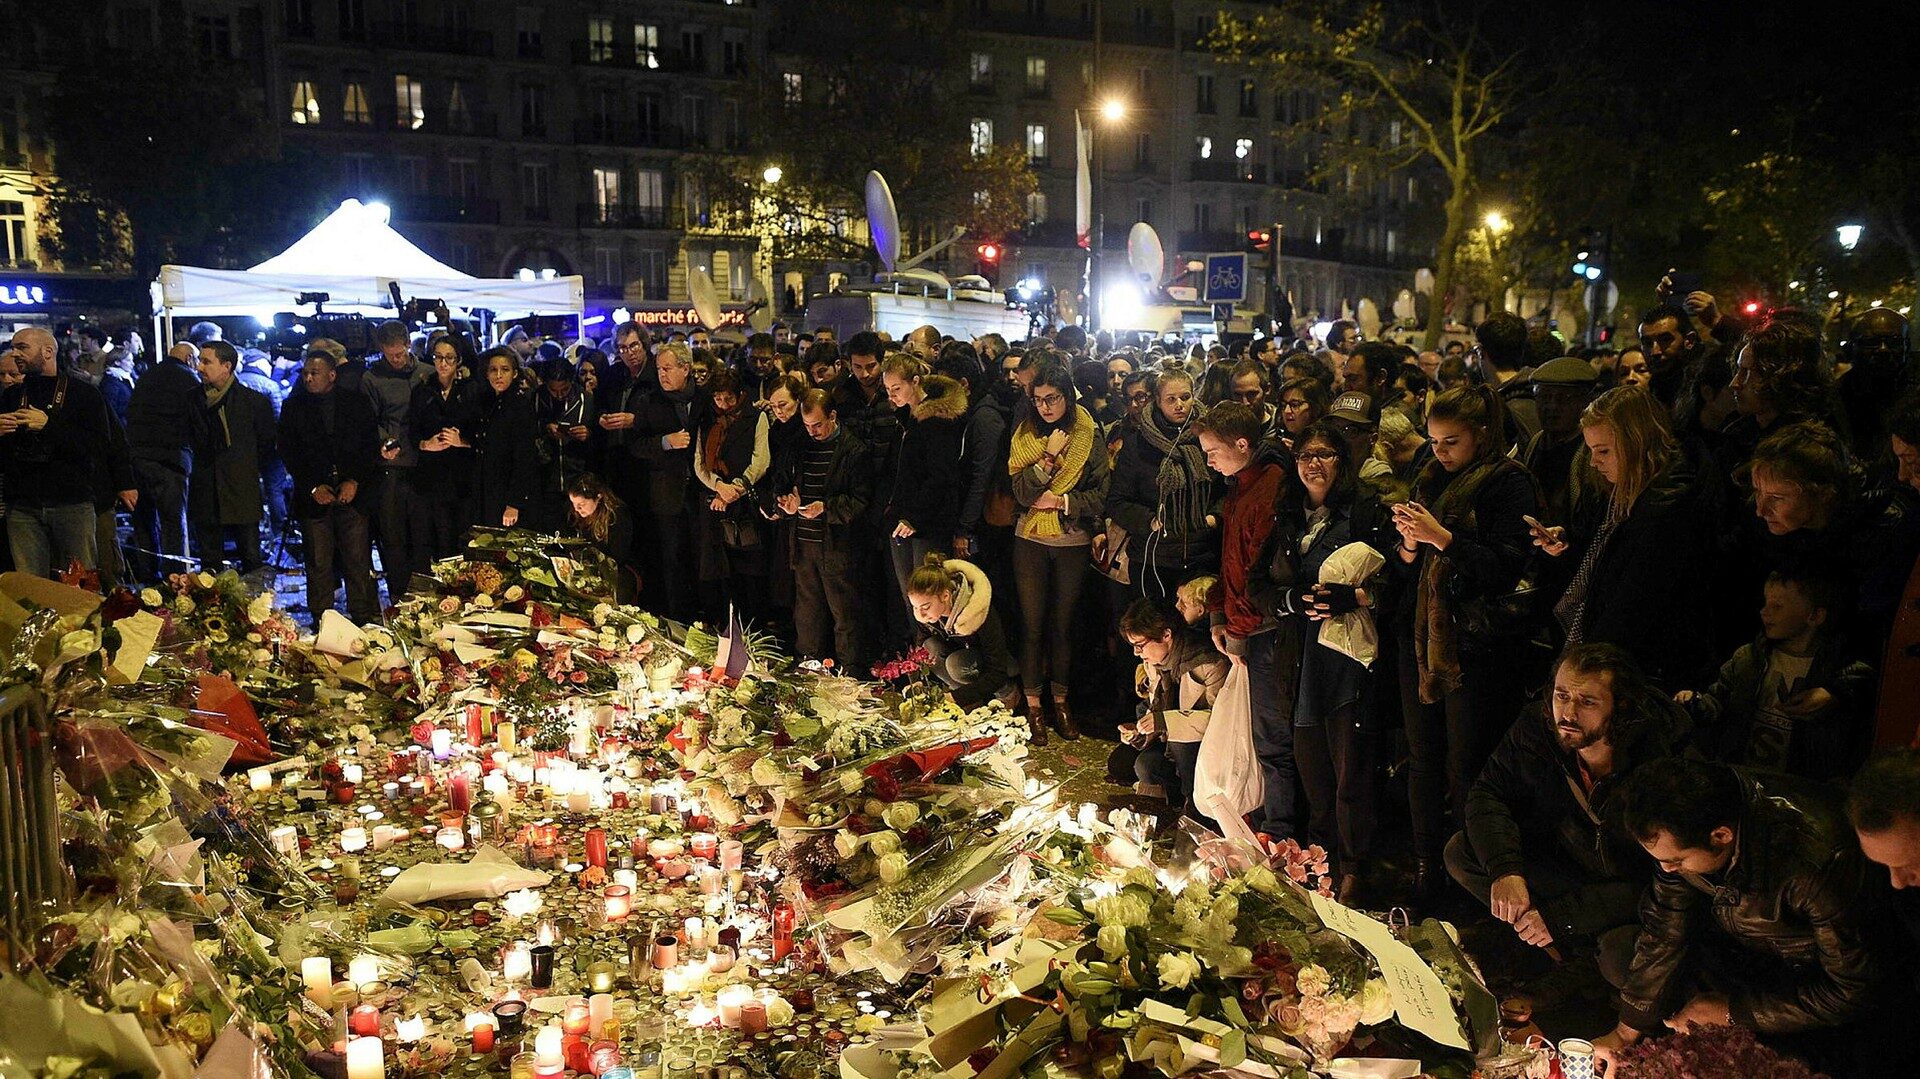 19 av 20 åtalade döms på alla punkter för terrorattackerna i Paris 2015 - Dagens Nyheter